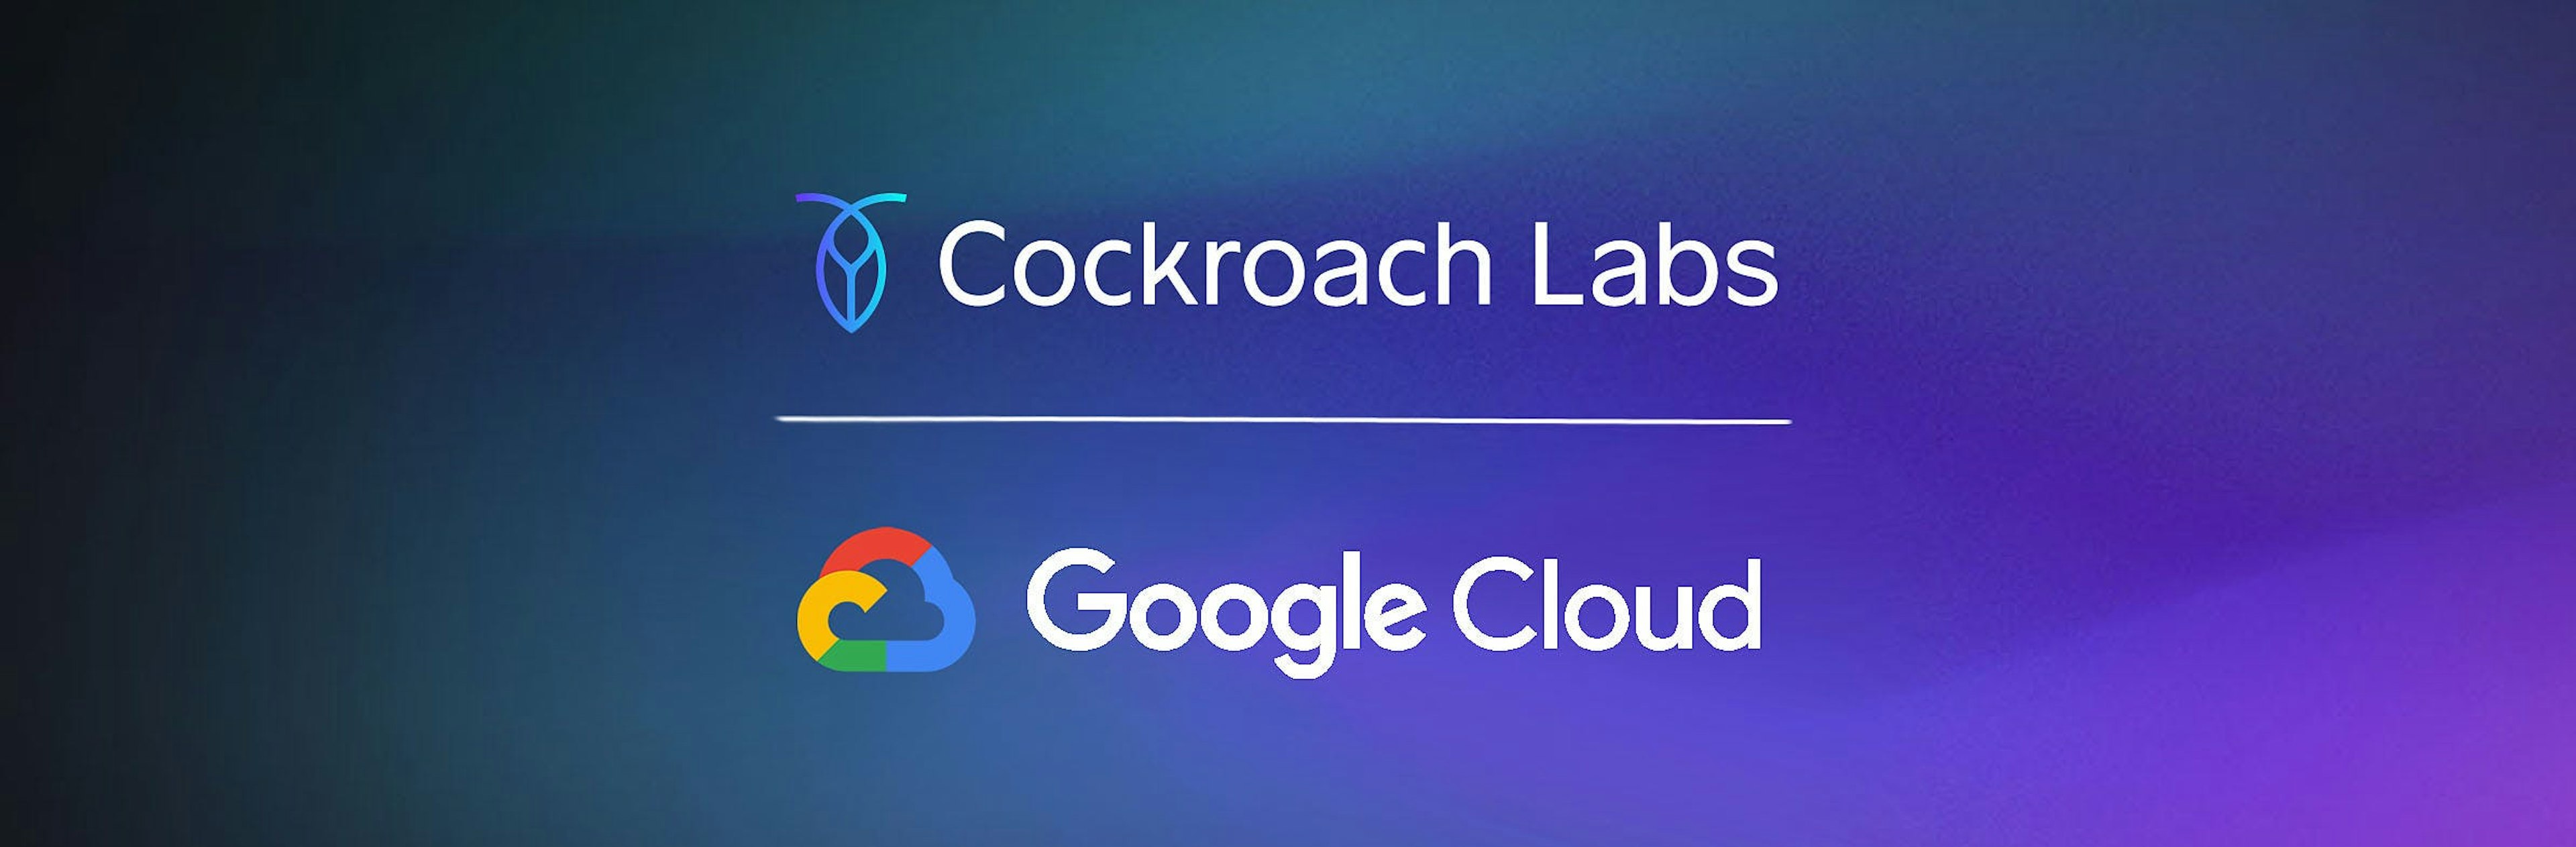 cockroach google cloud